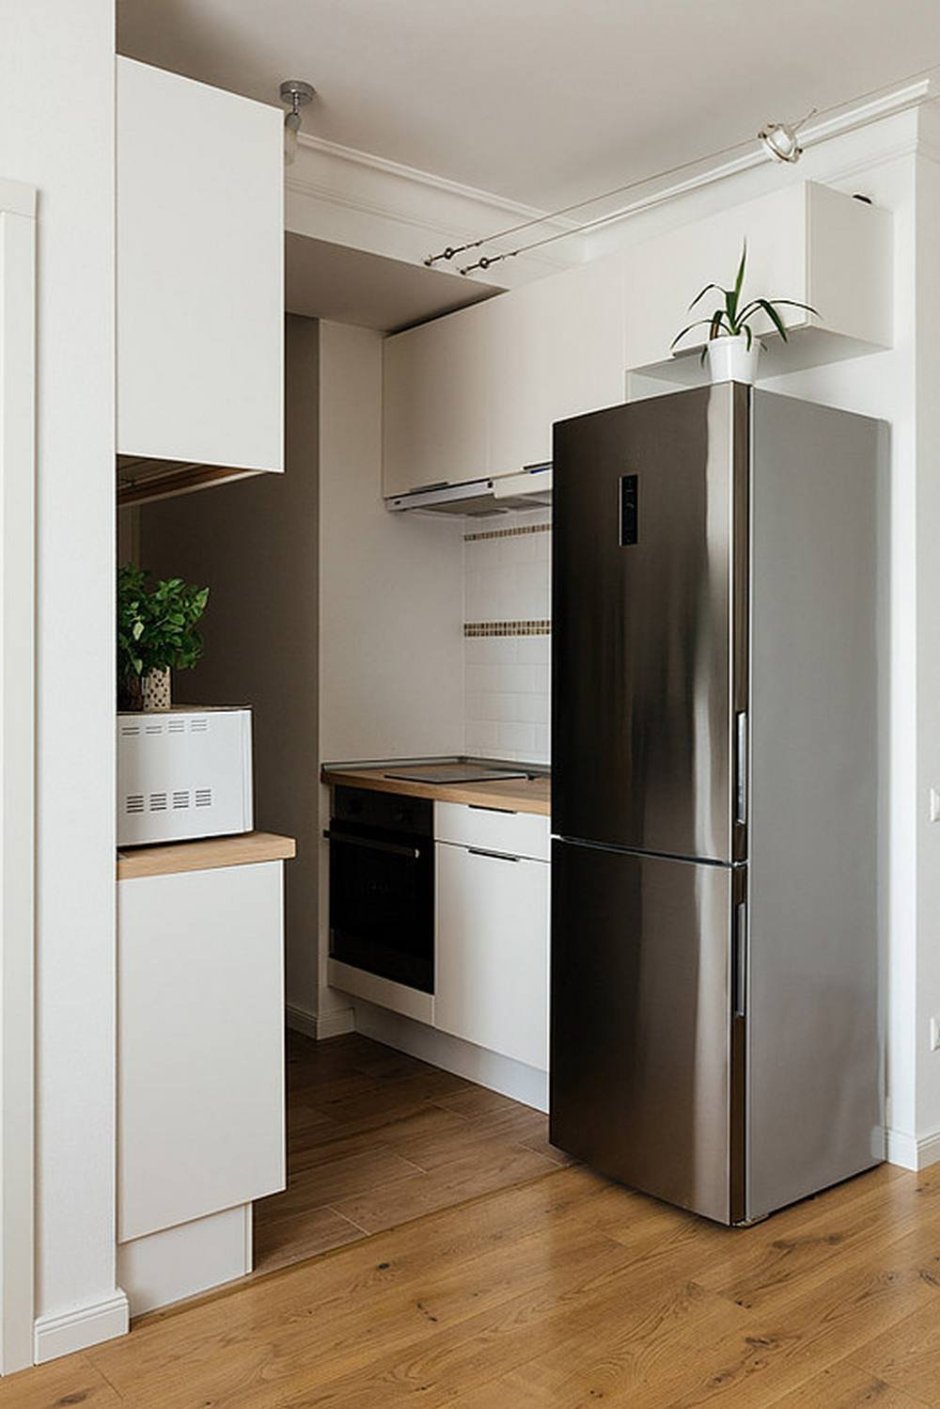 Холодильник в кухонной нише